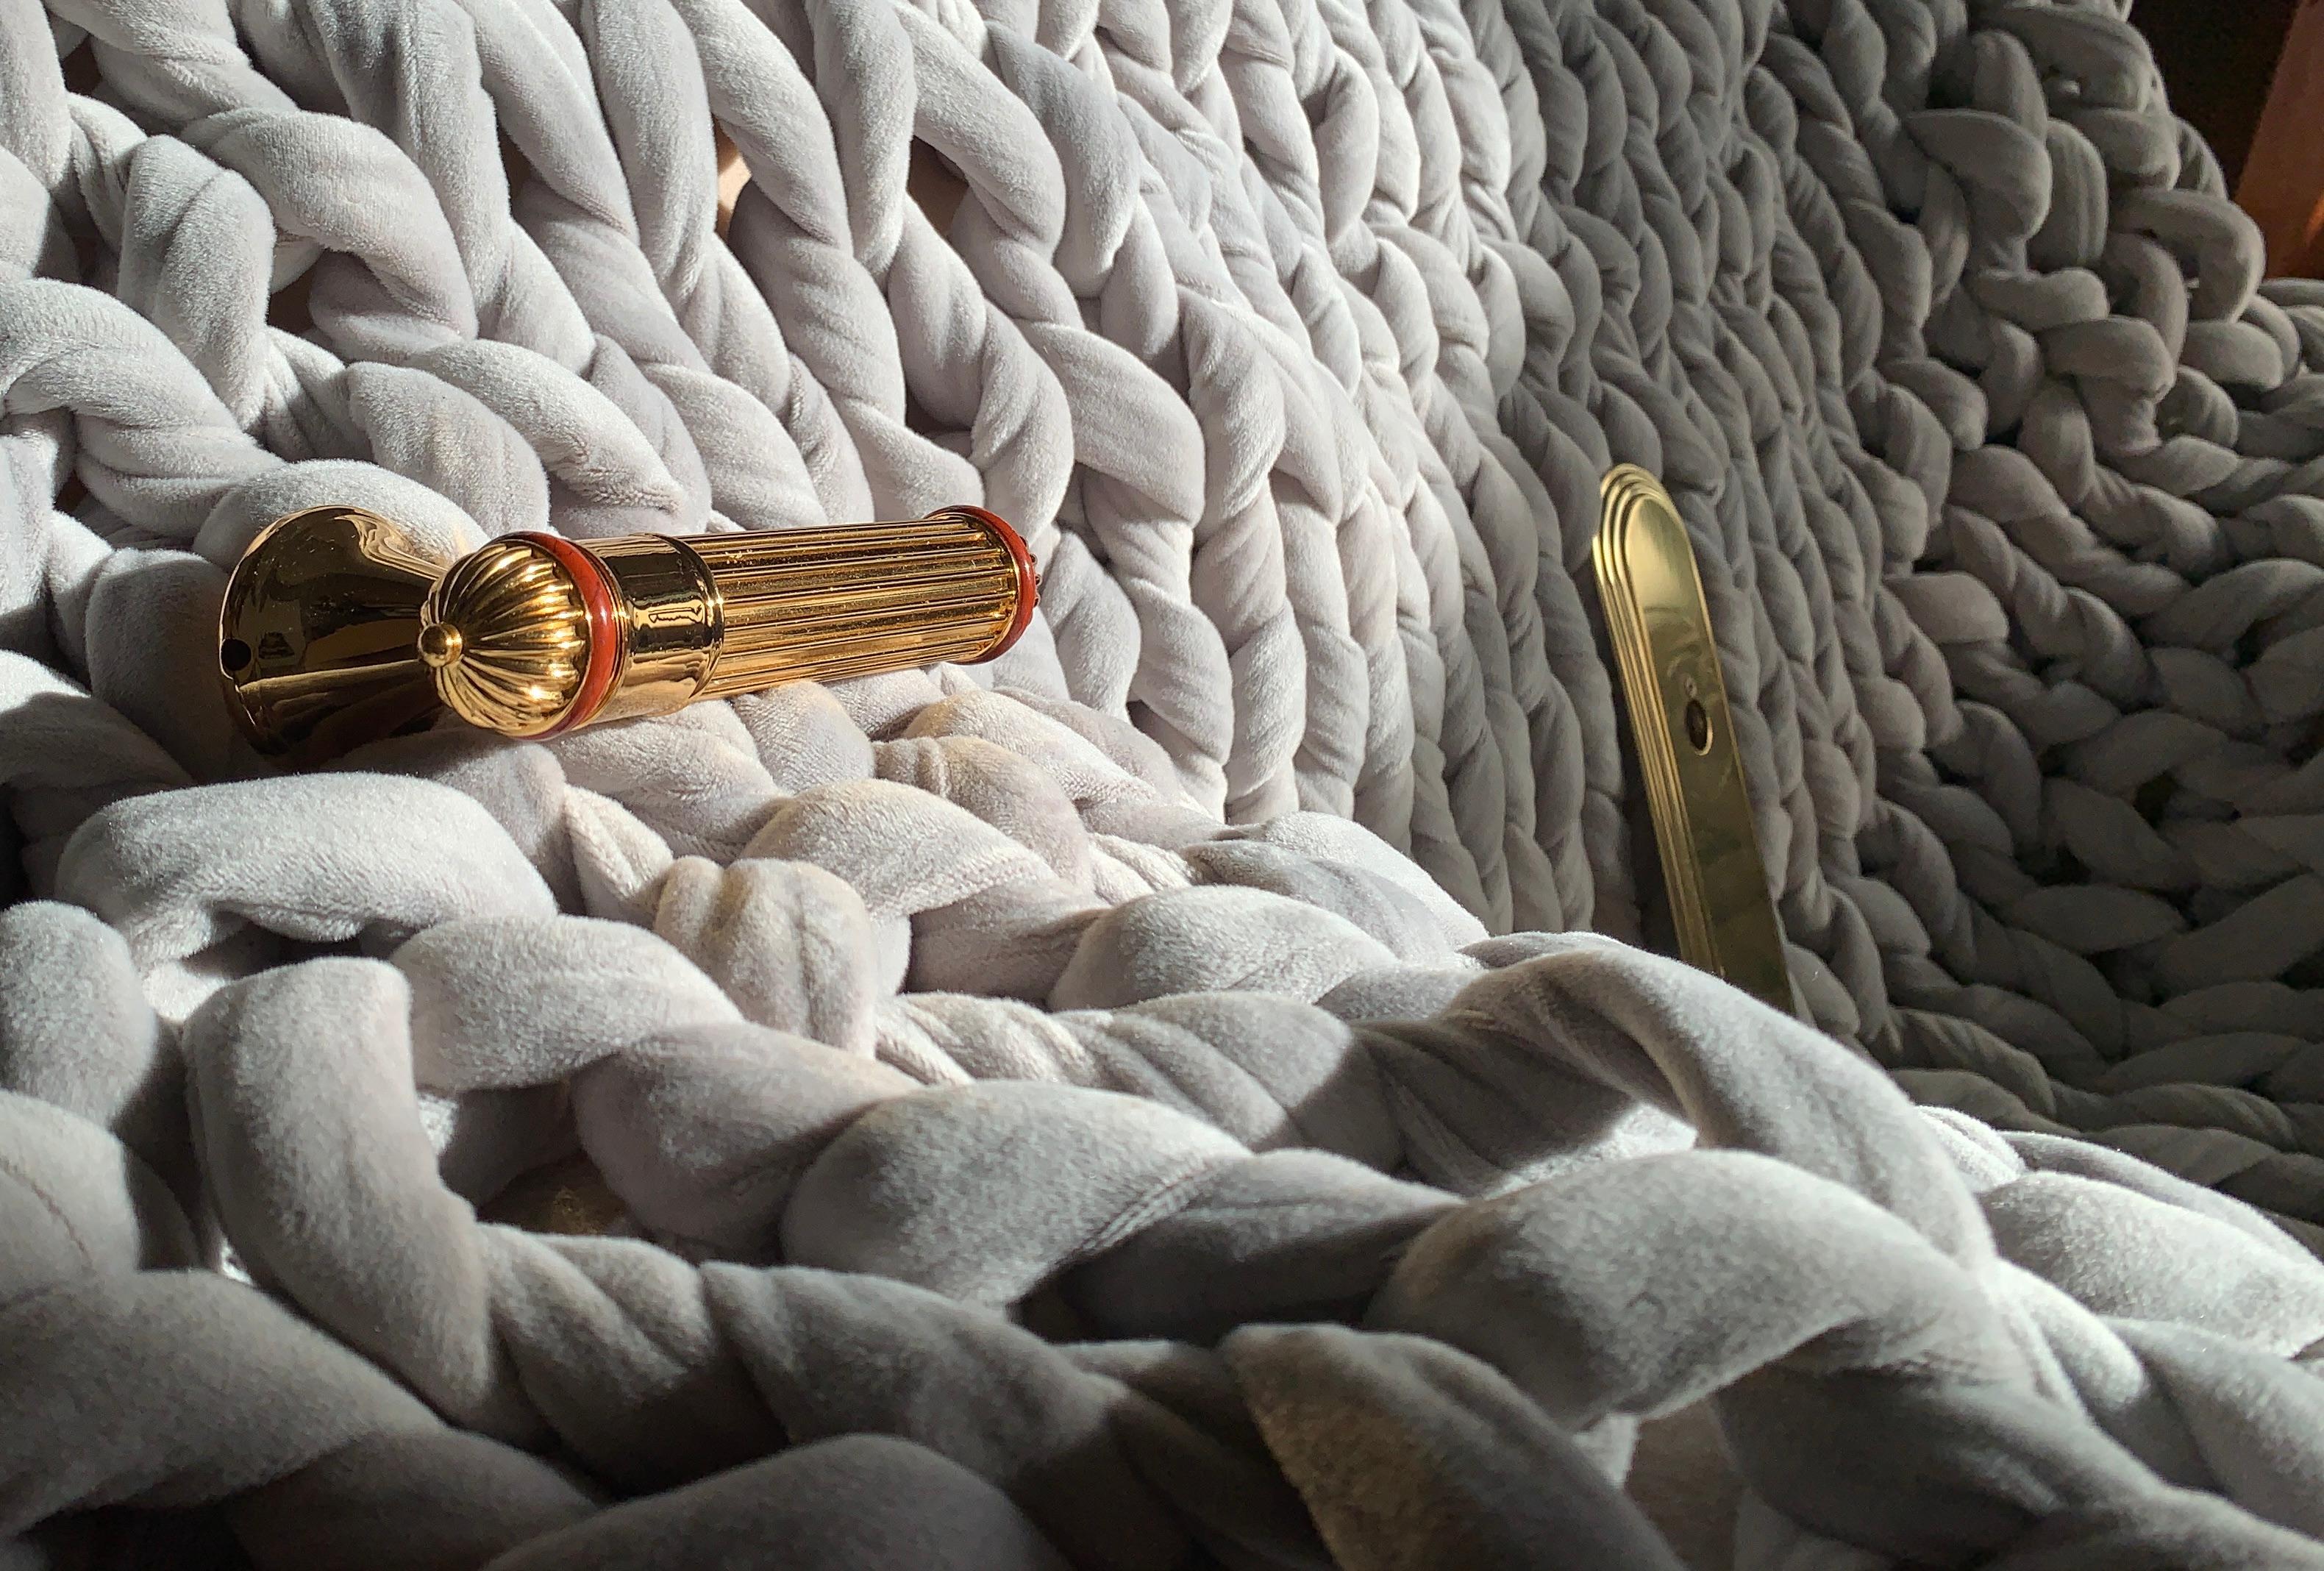 Griff/Knauf Poignées S10 aus polierter, vergoldeter Bronze und rotem Jaspis von Serdaneli Paris, Kollektion Prestige. Wunderschönes, gehaltvolles Stück. Seit mehr als 45 Jahren ist Serdaneli, die 